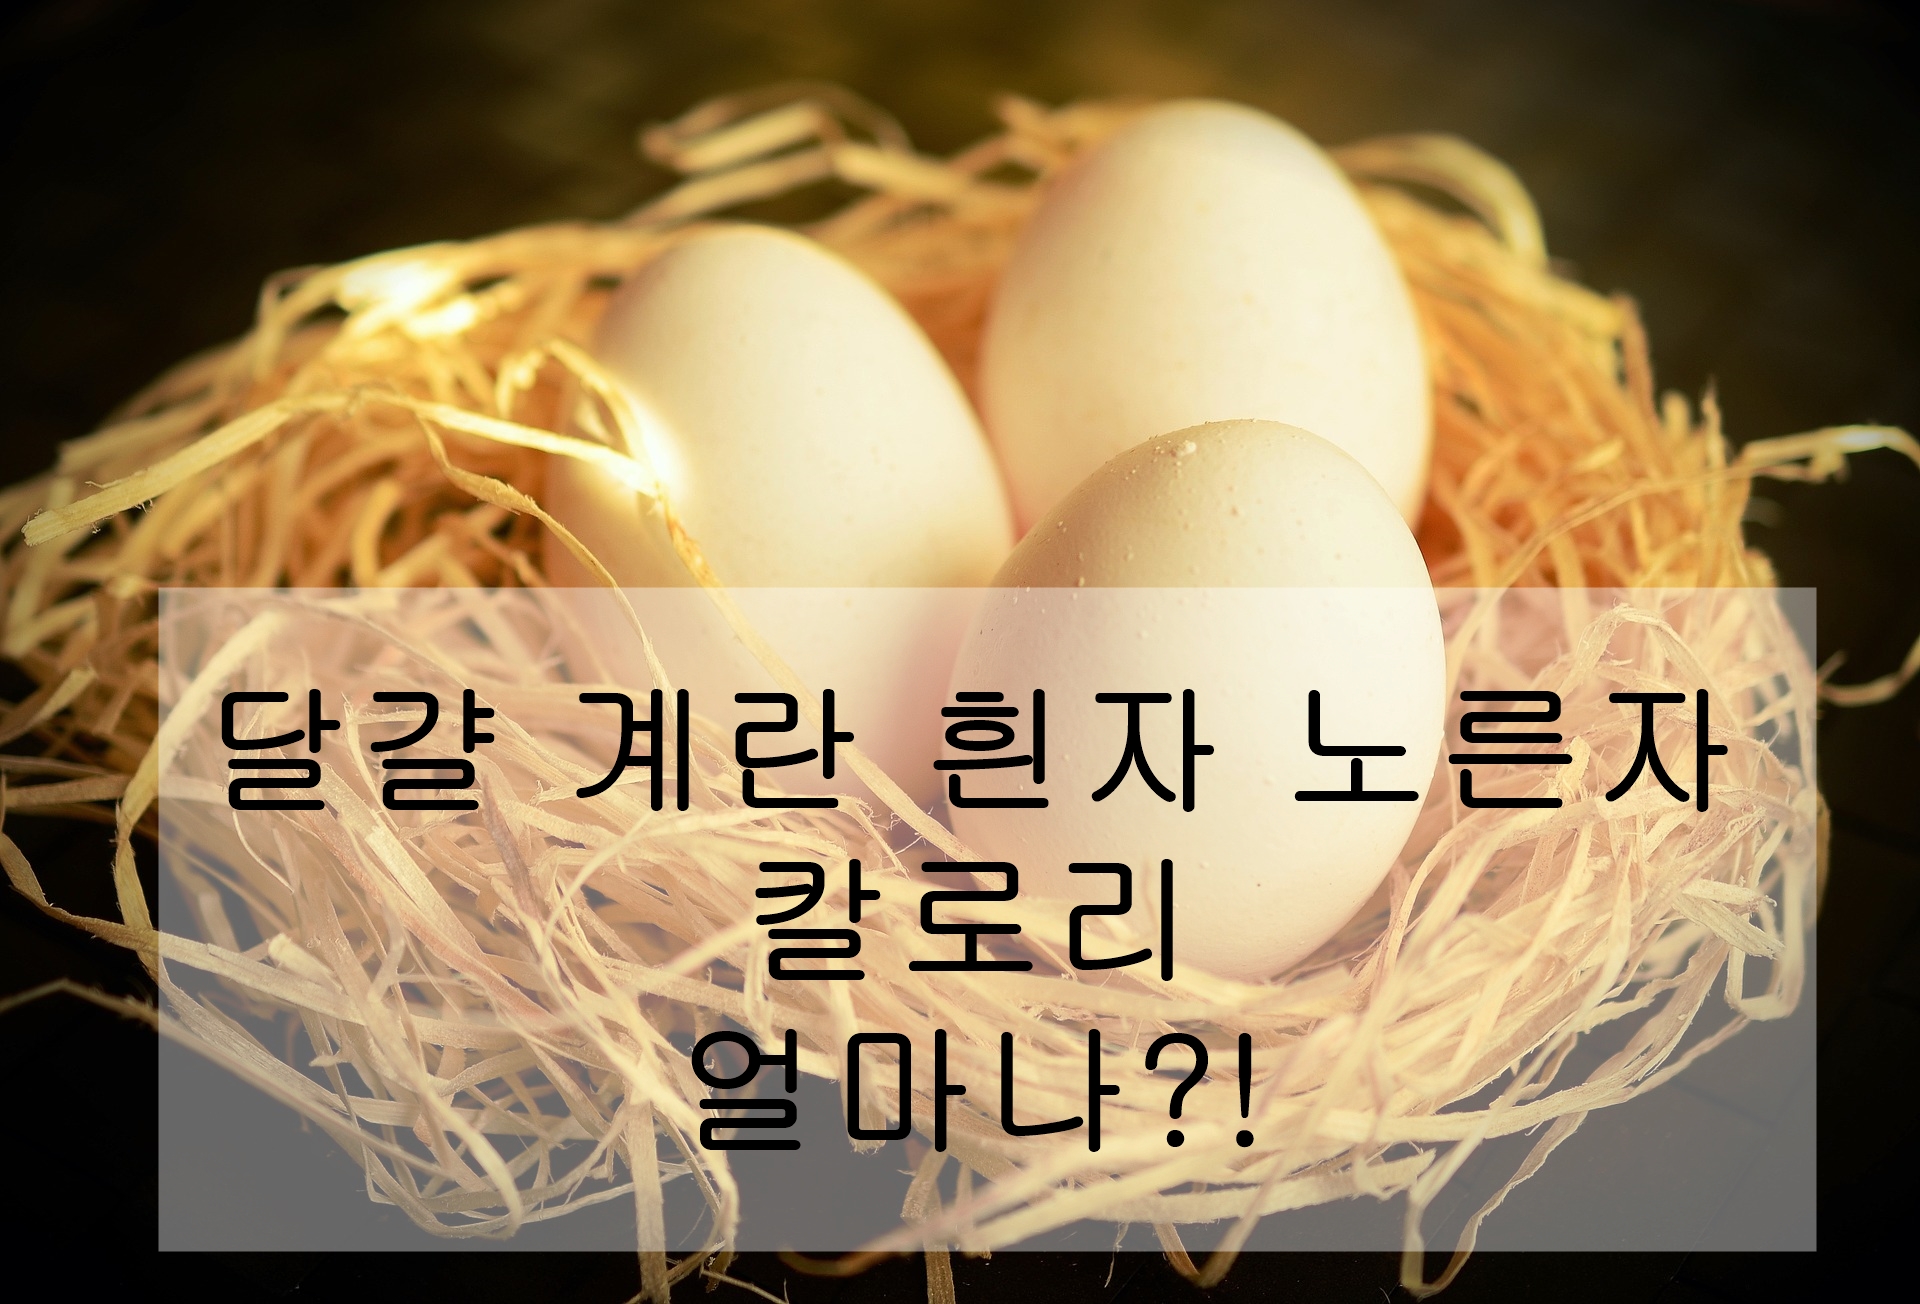 달걀 계란 흰자 노른자 칼로리 얼마나?!